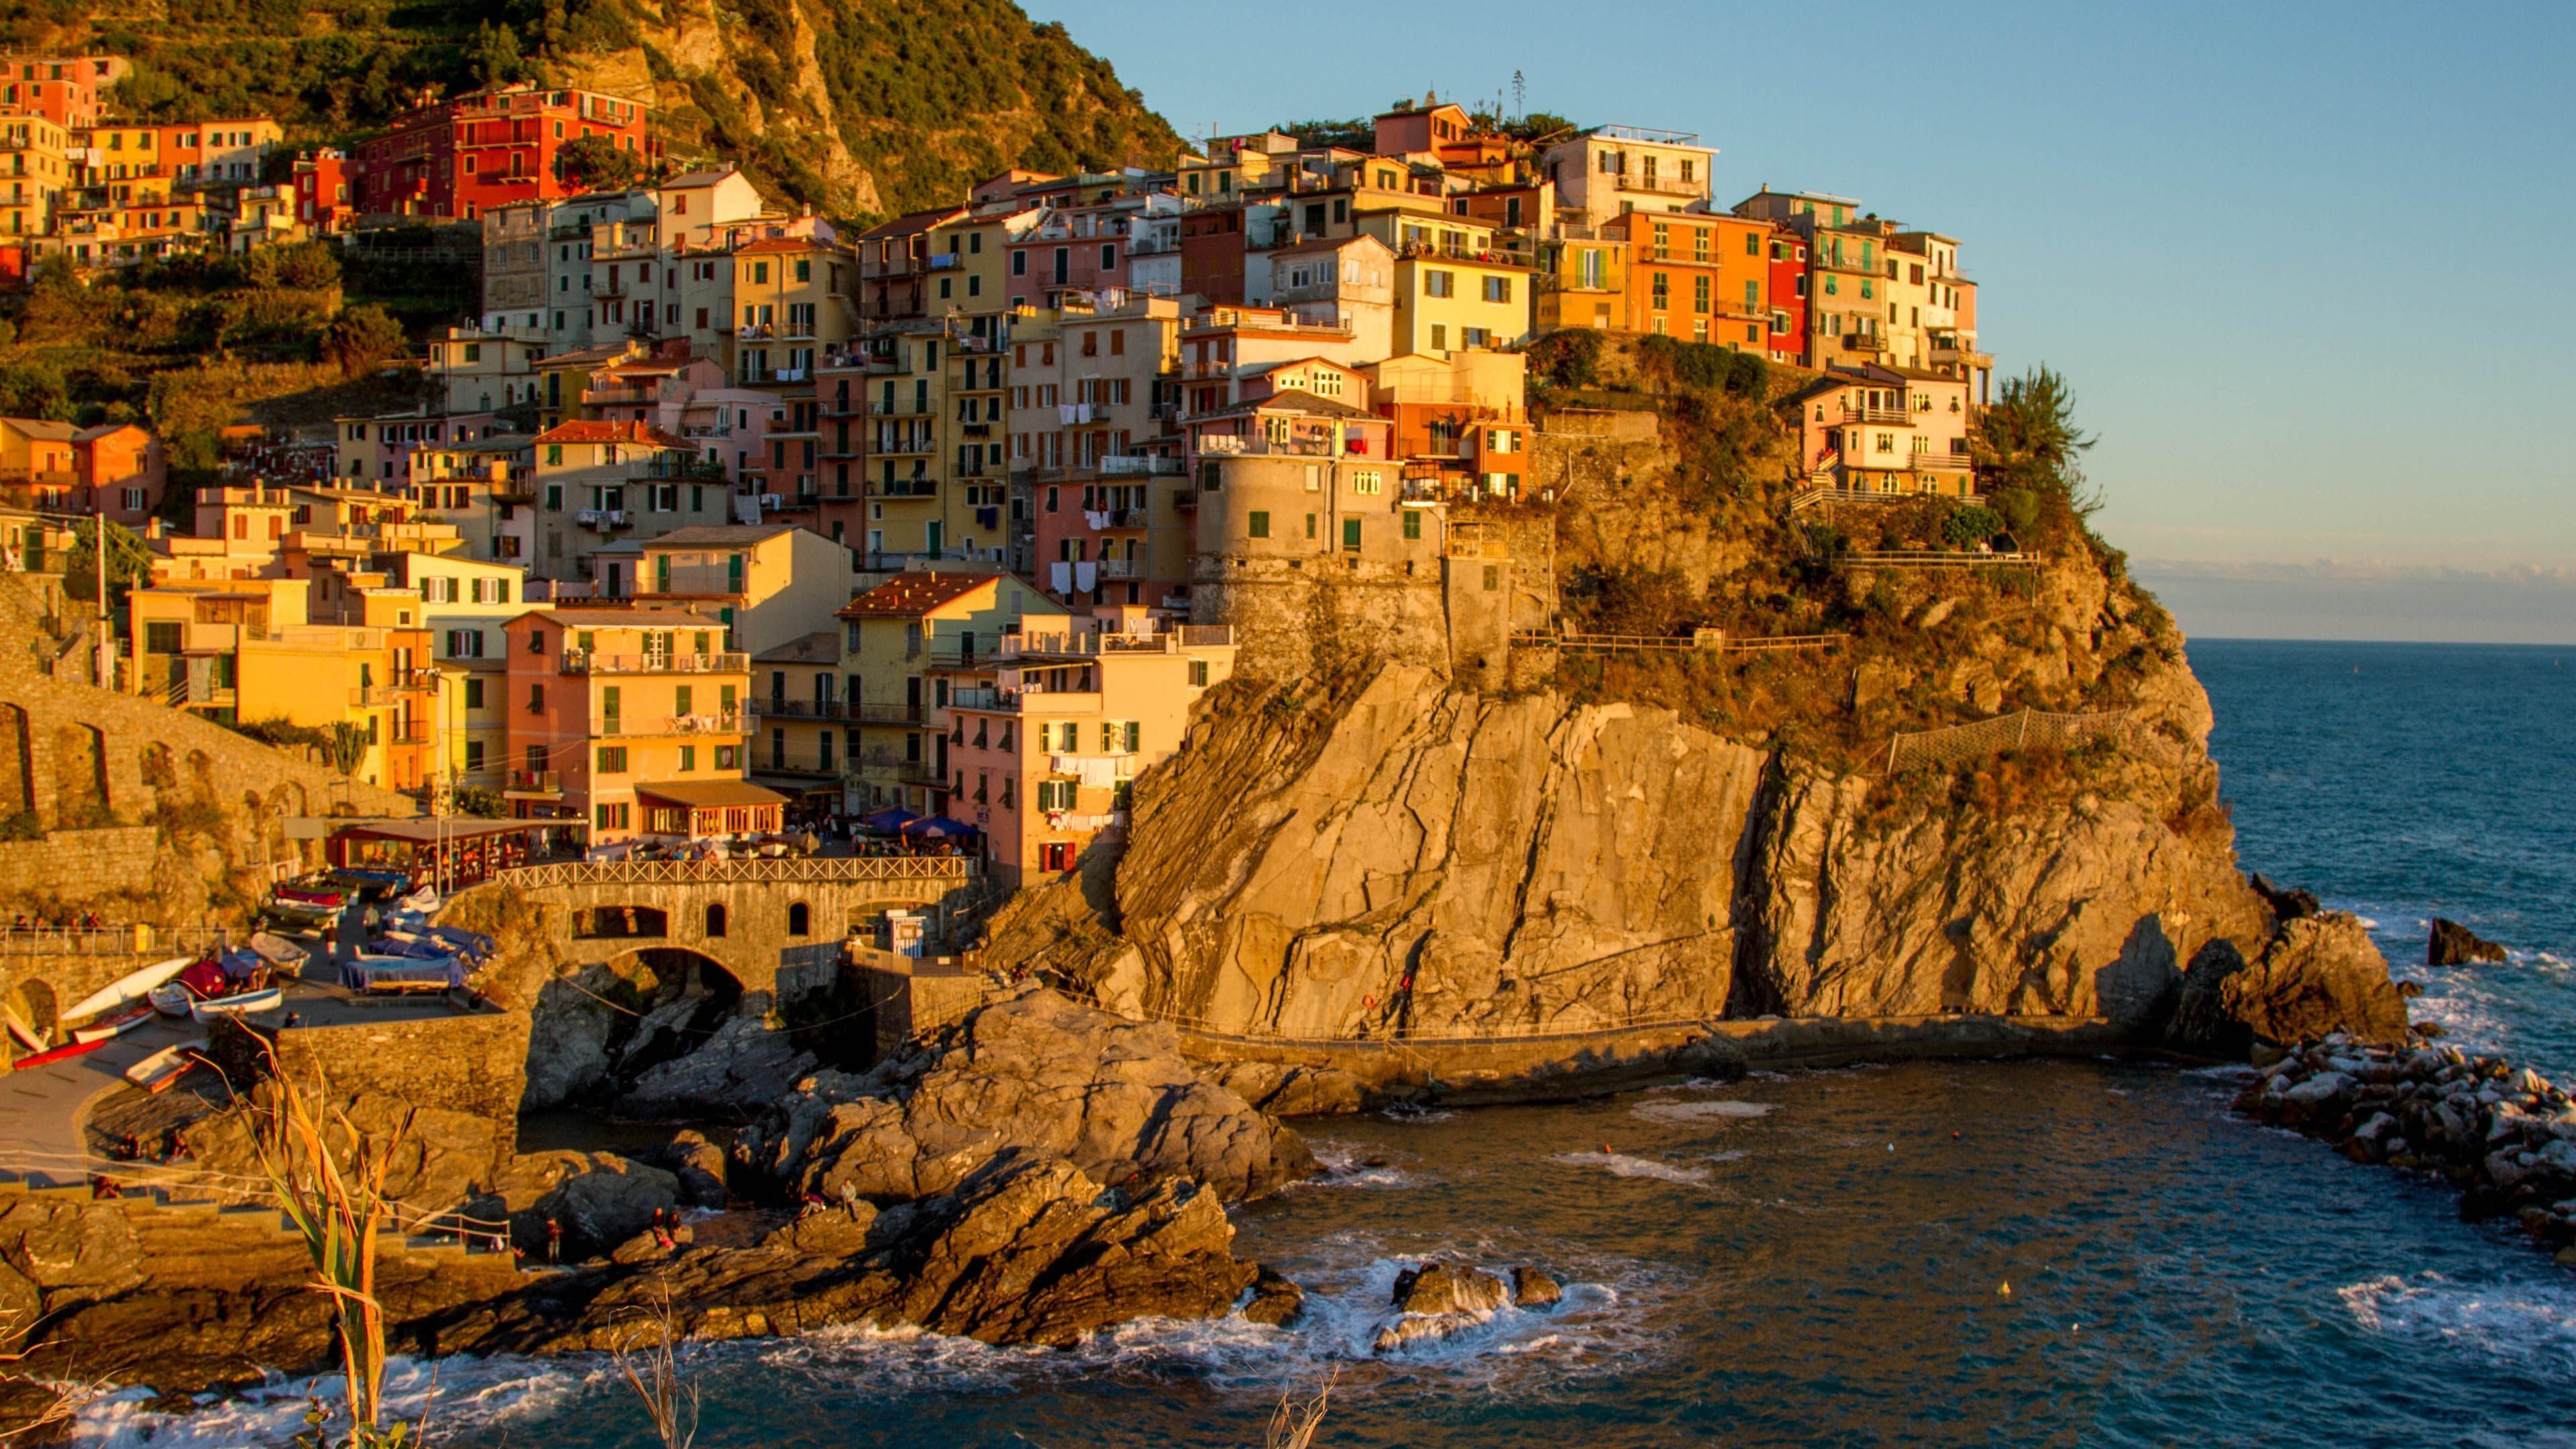 Cinque Terre, Italy - 3840x2160 - 4K 16/9 (Ultra HD, UHD ...